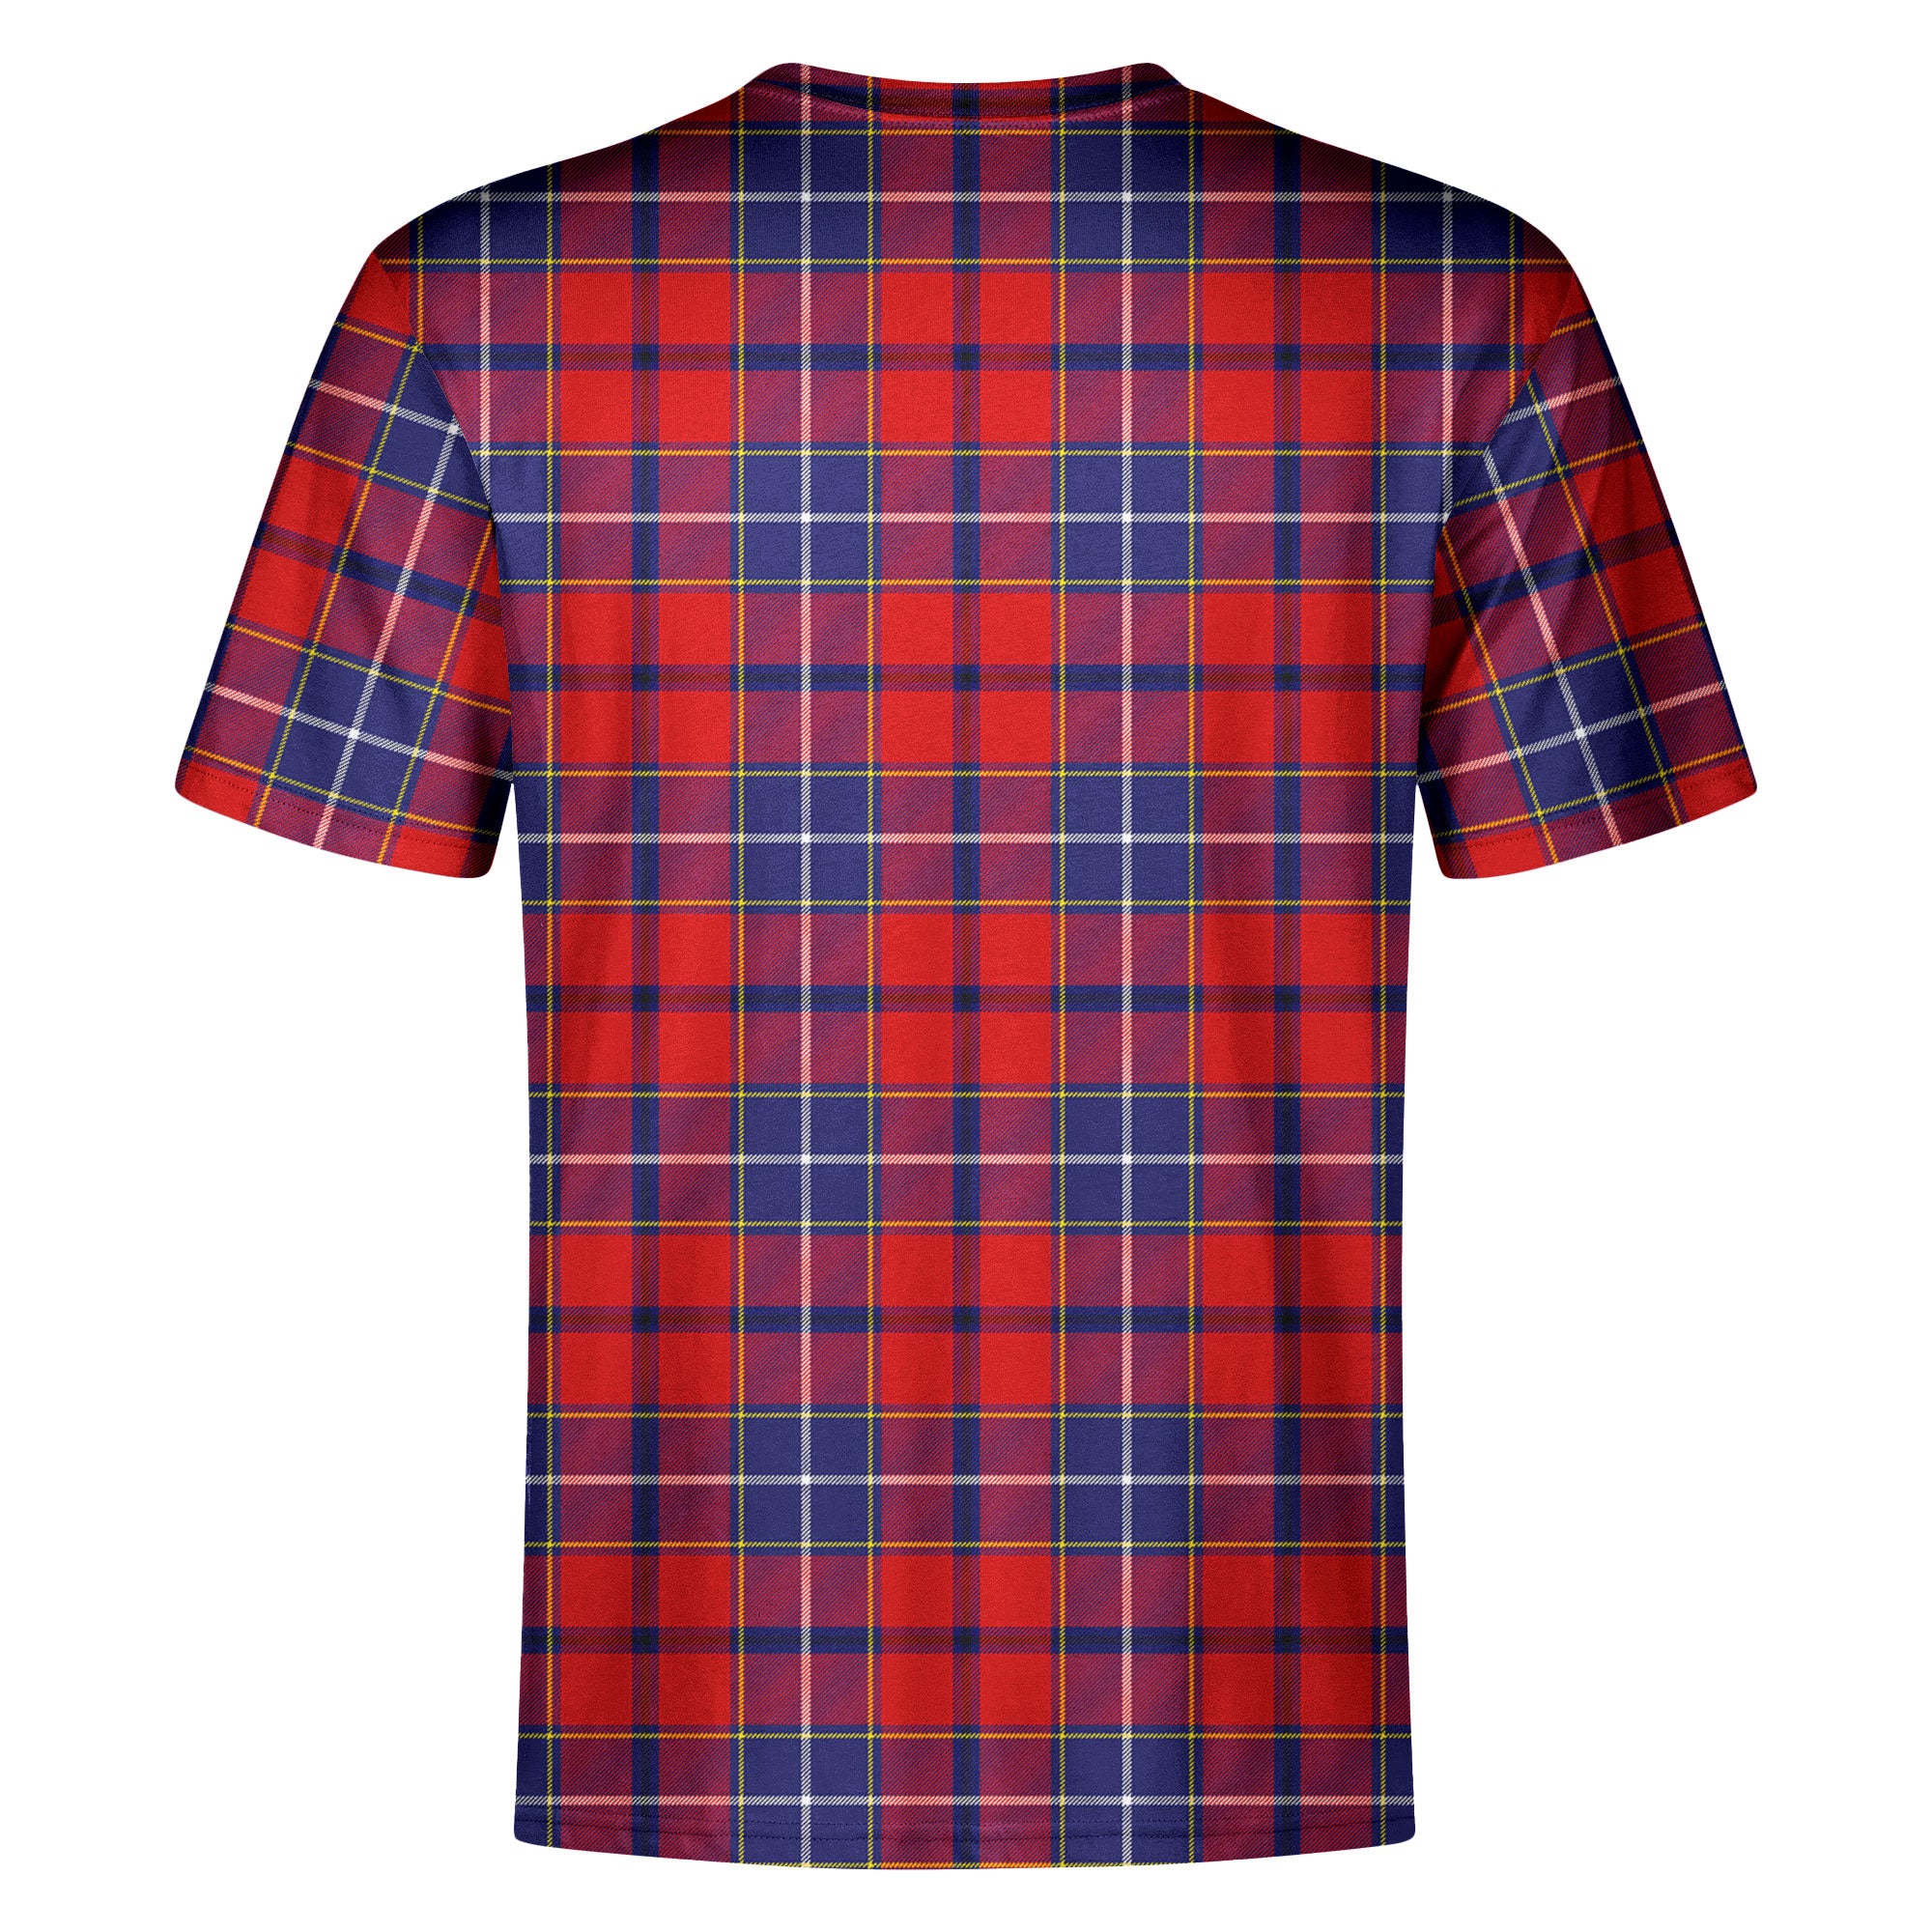 Wishart Dress Tartan Crest T-shirt